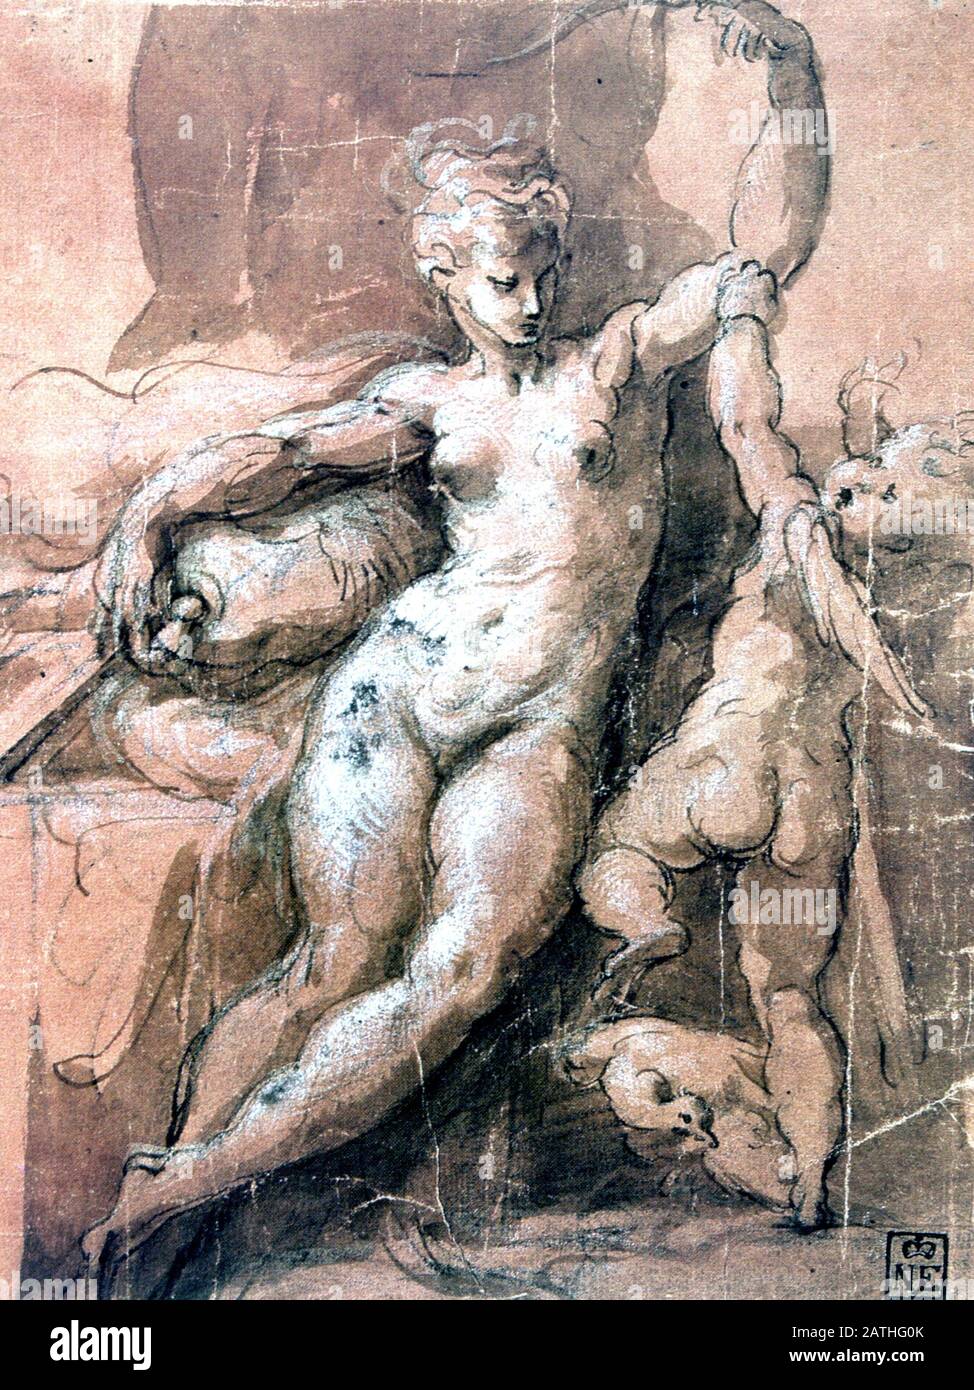 Girolamo Francesco Maria Mazzola bekannt als Parmigianino italienische Schule Venus Entwaffnende Kupid c.1527-1530 Stift, waschen, Tinte und Kreide auf Papier (18,8 x 14,3 cm) Budapest, Museum der Schönen Künste Stockfoto